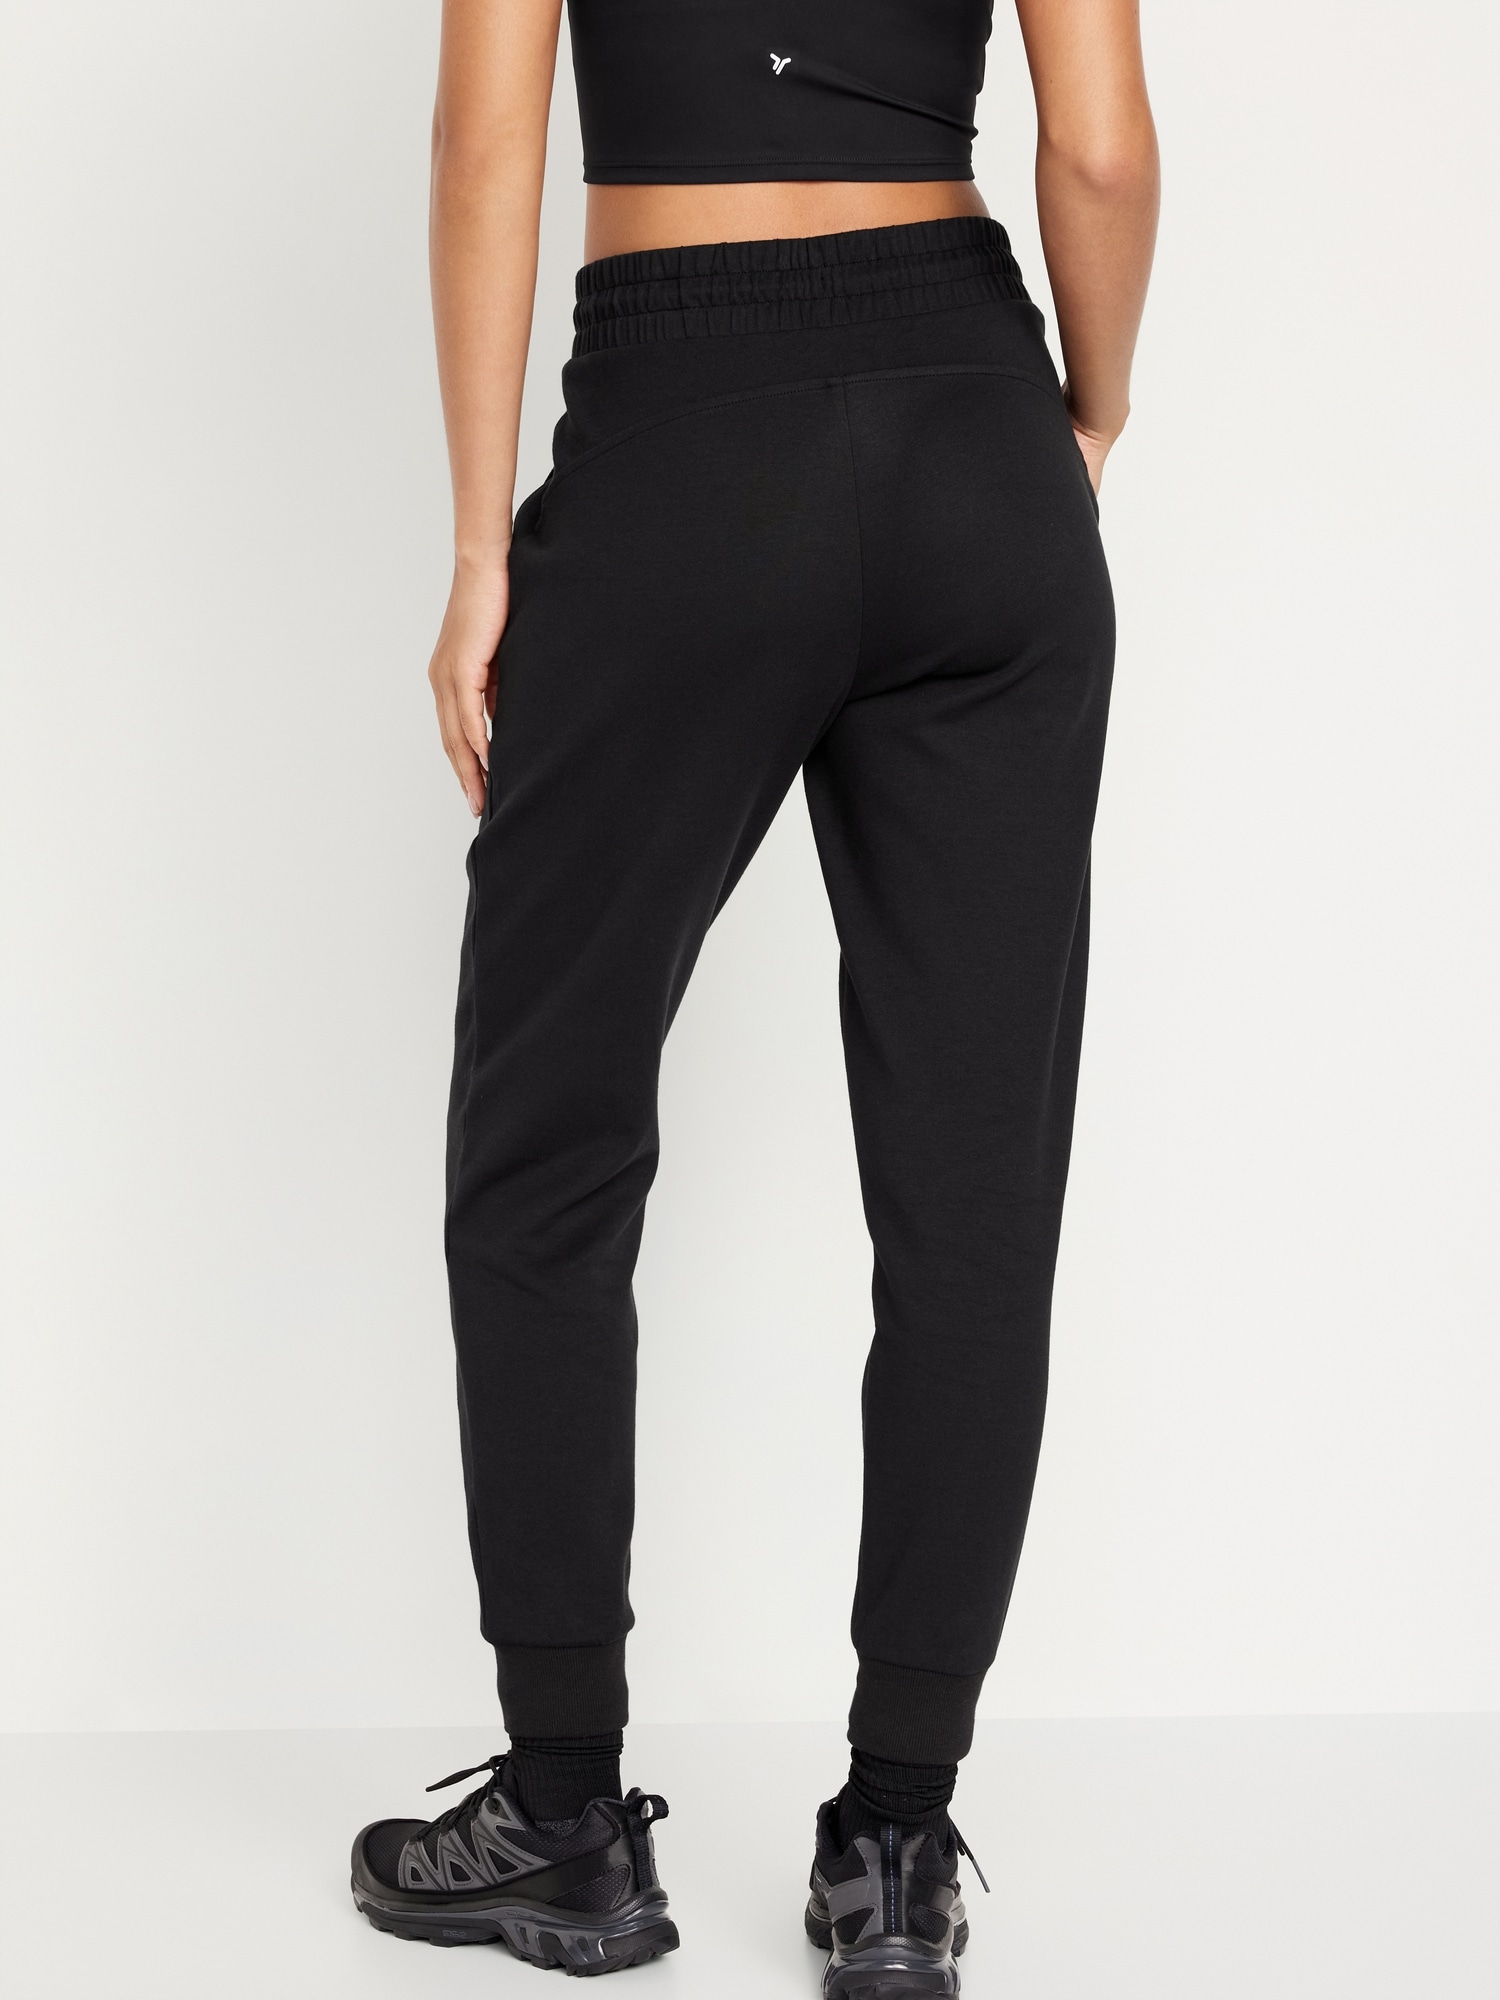 Nike Women's Plus Size Sportswear Fleece Jogger Sweatpants Pants (Black, 2X)